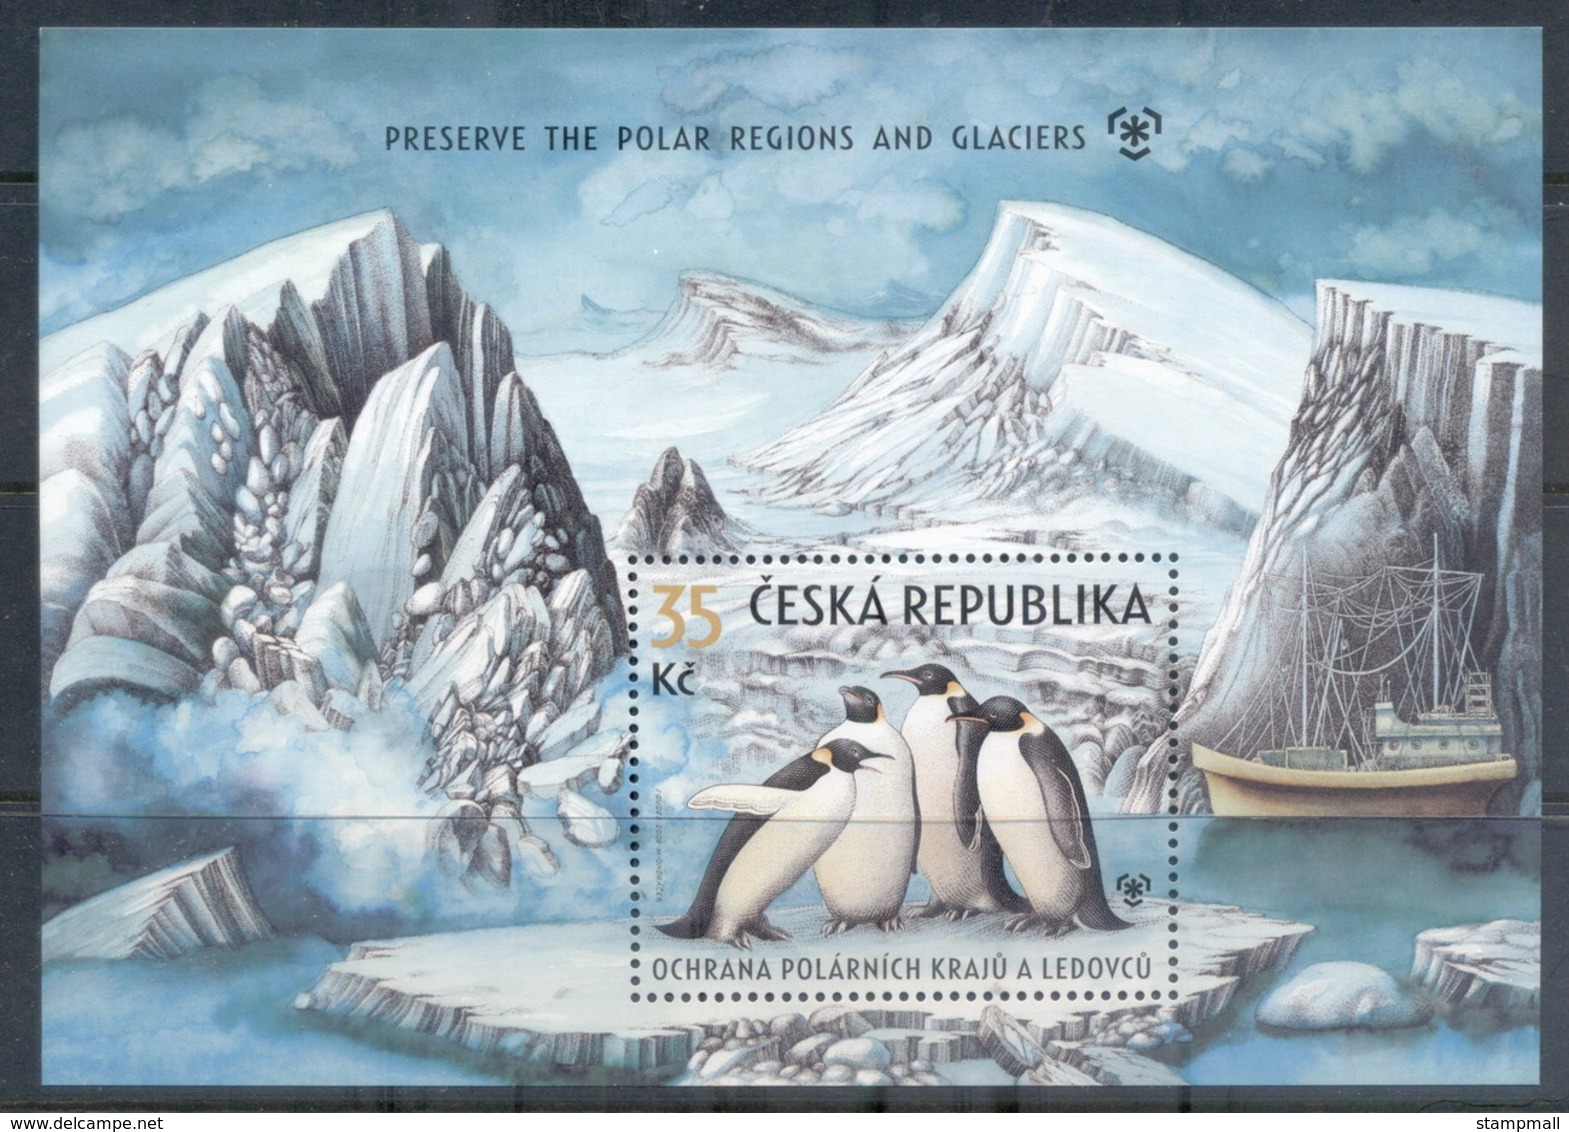 Czech Republic 2009 Preserve The Polar Regions And Glaciers MS MUH - Nuovi